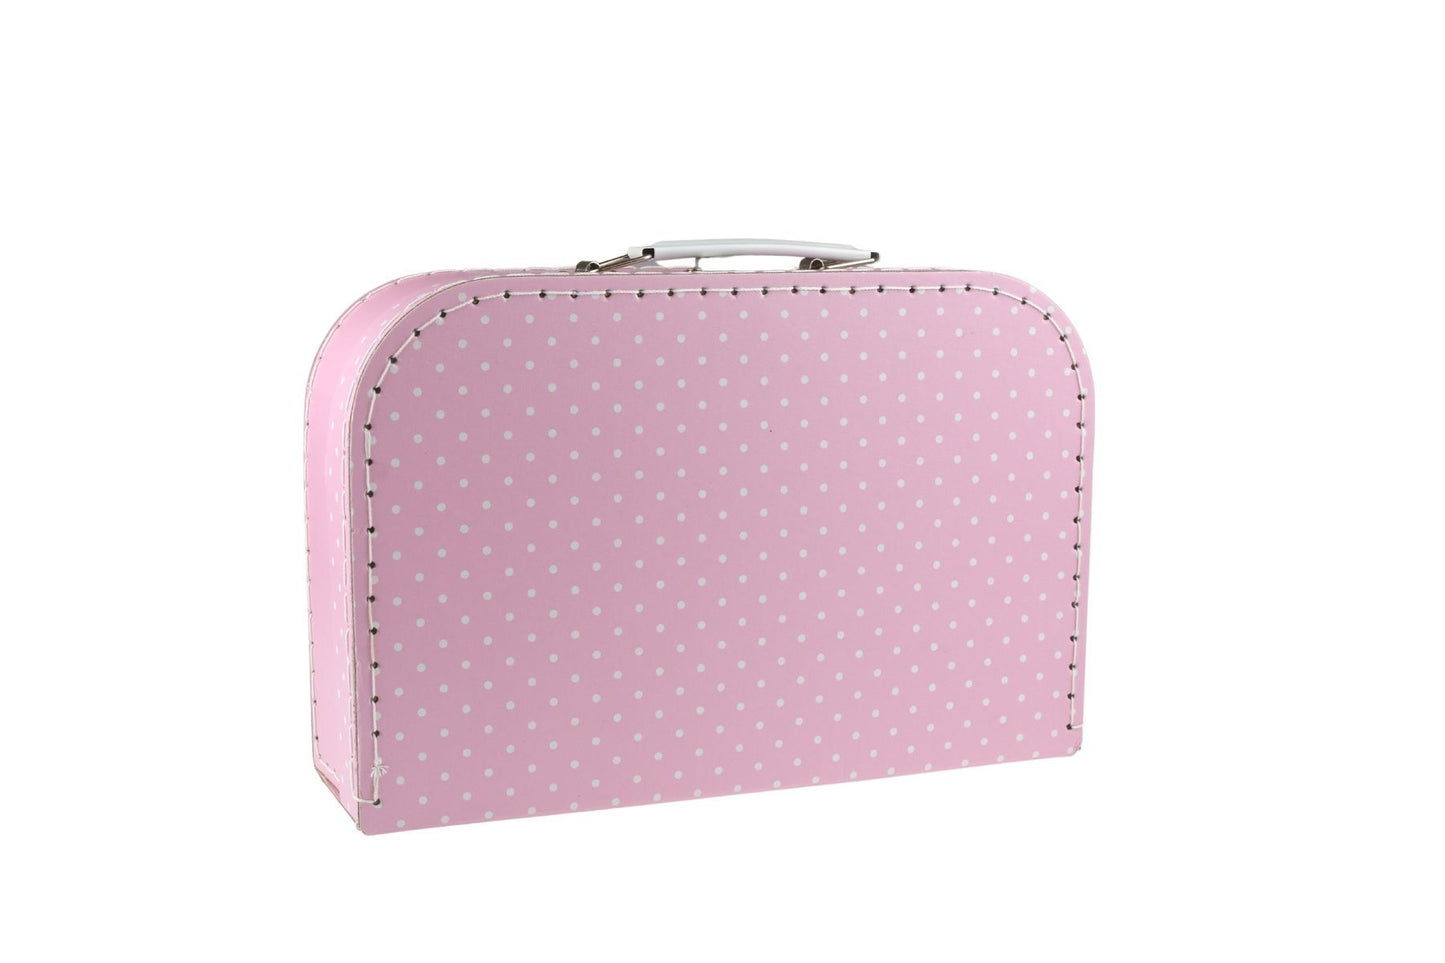 Kaper Kidz Pink Tin Tea Set in Suitcase